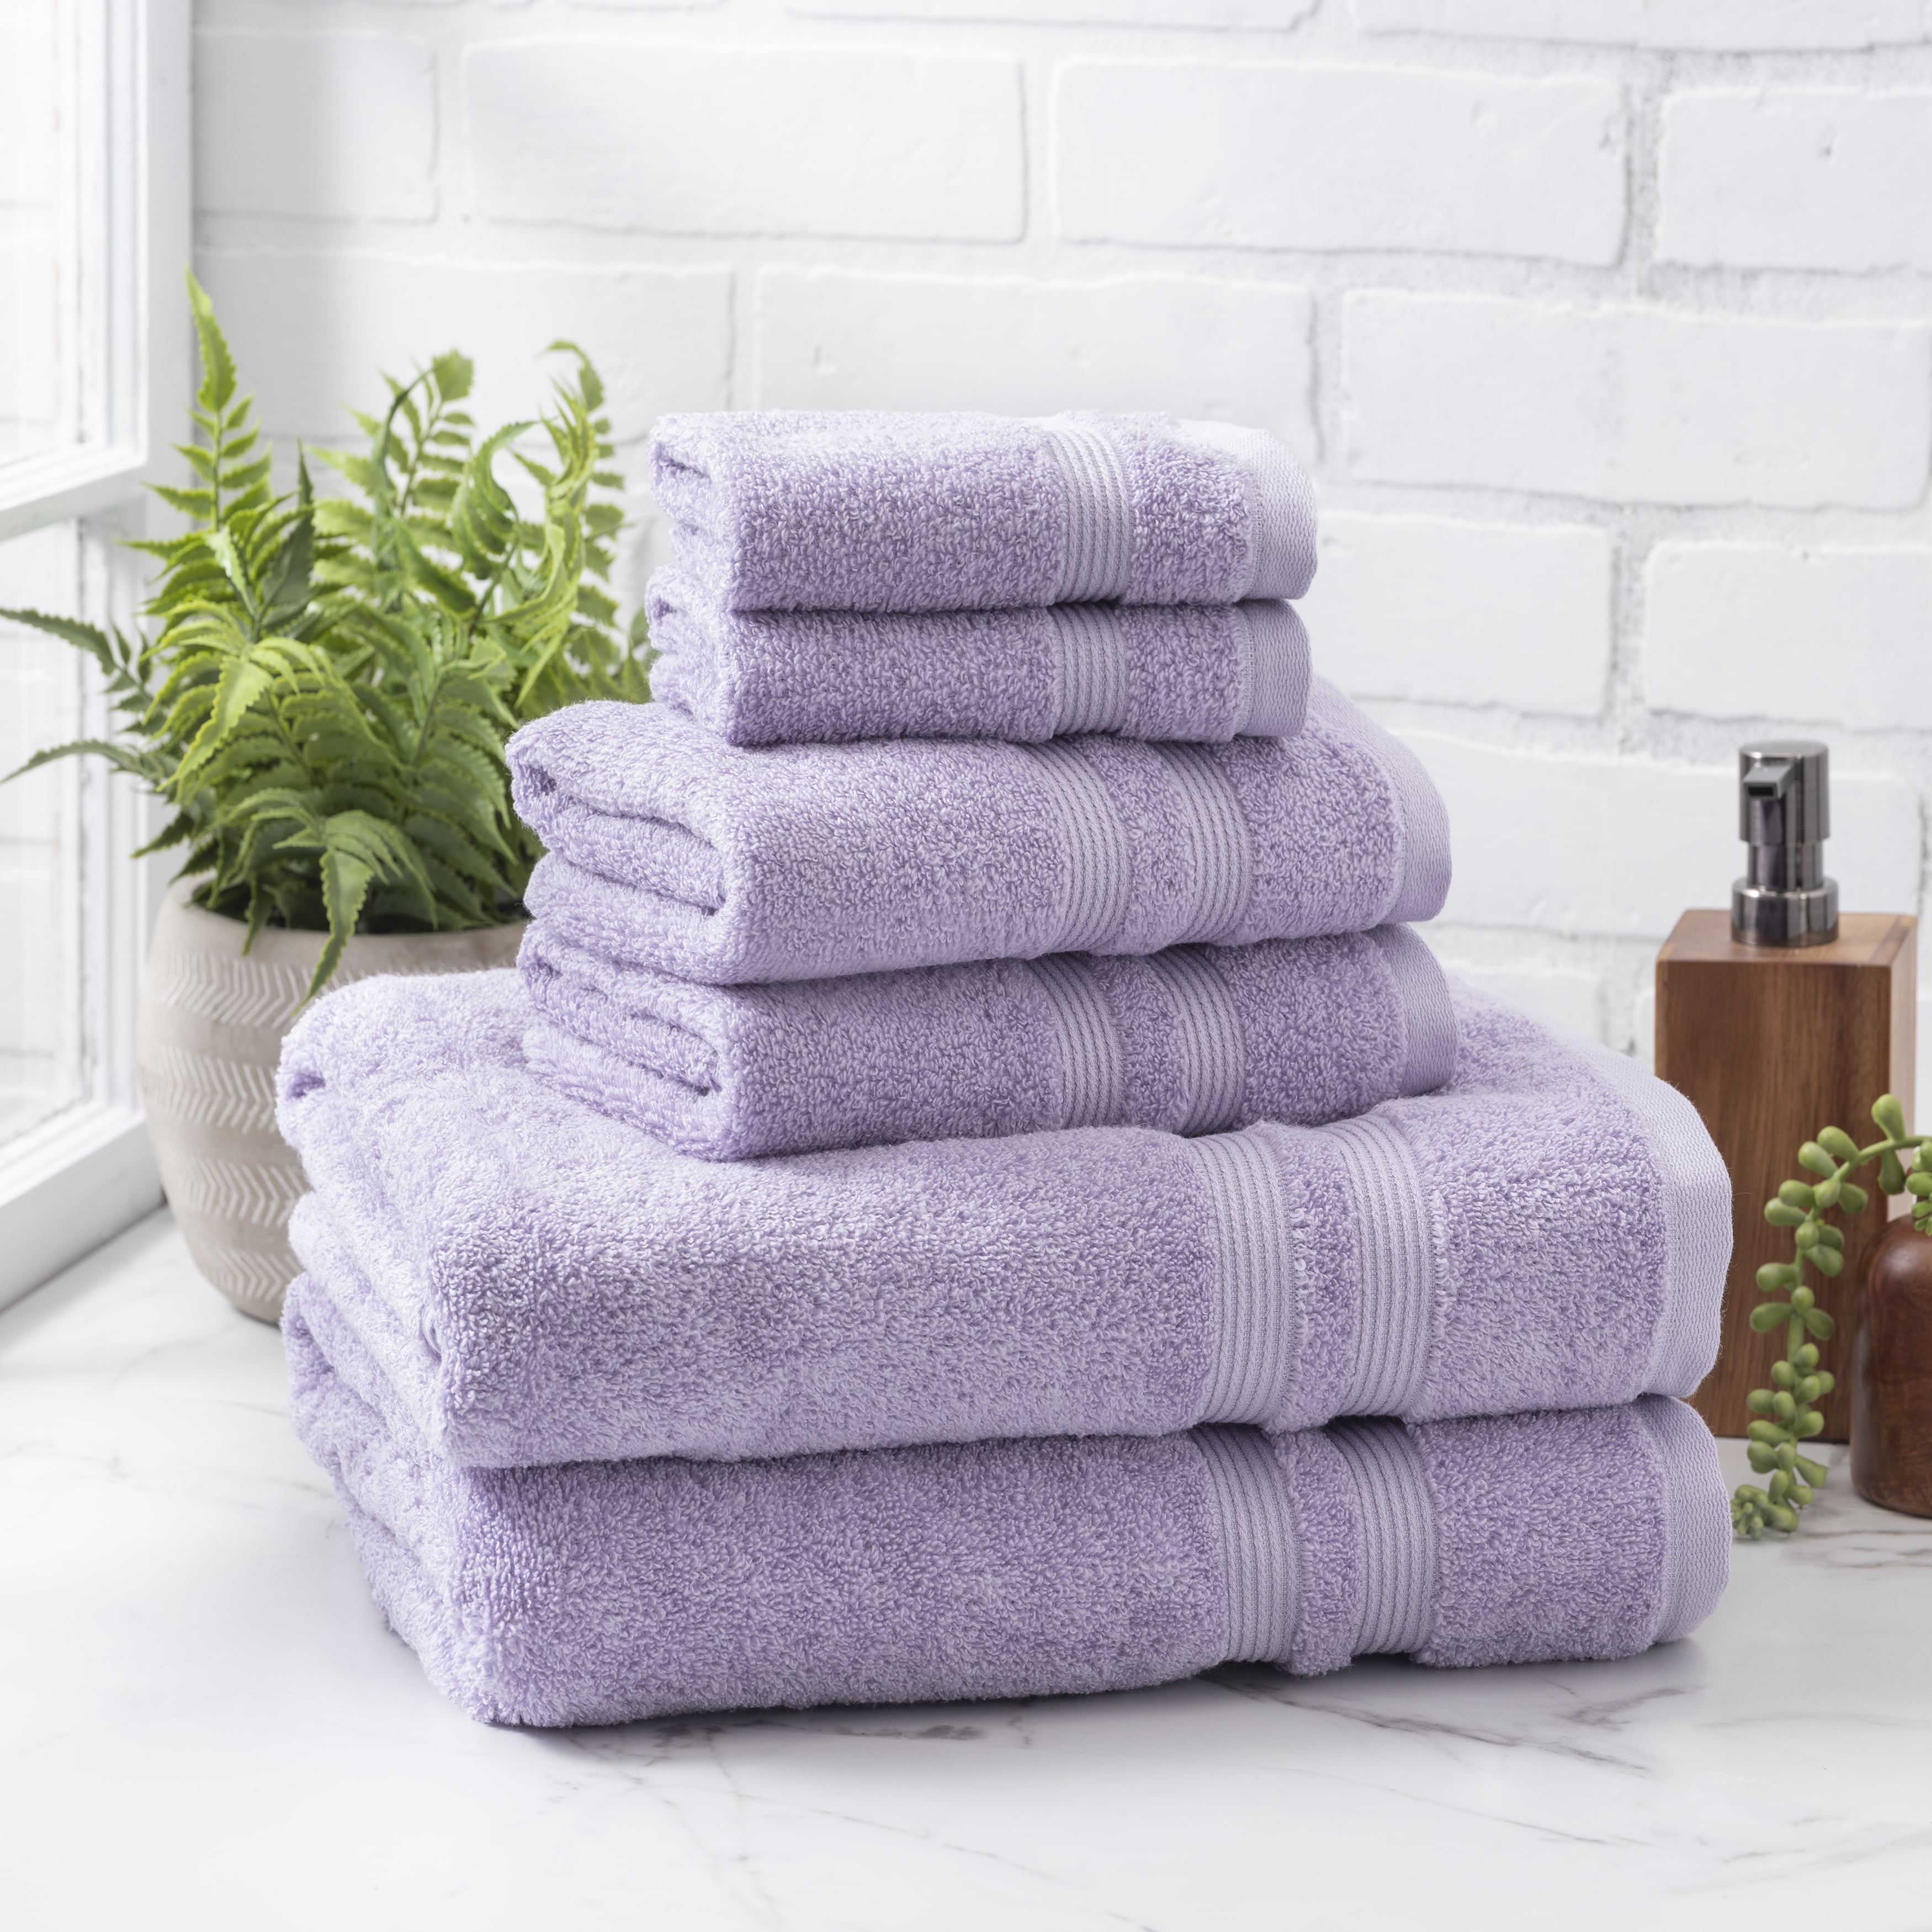 Mainstays Performance Textured Bath Towel 6-Piece Set, Blue Linen, Size: 6-Piece Bath Towel Set